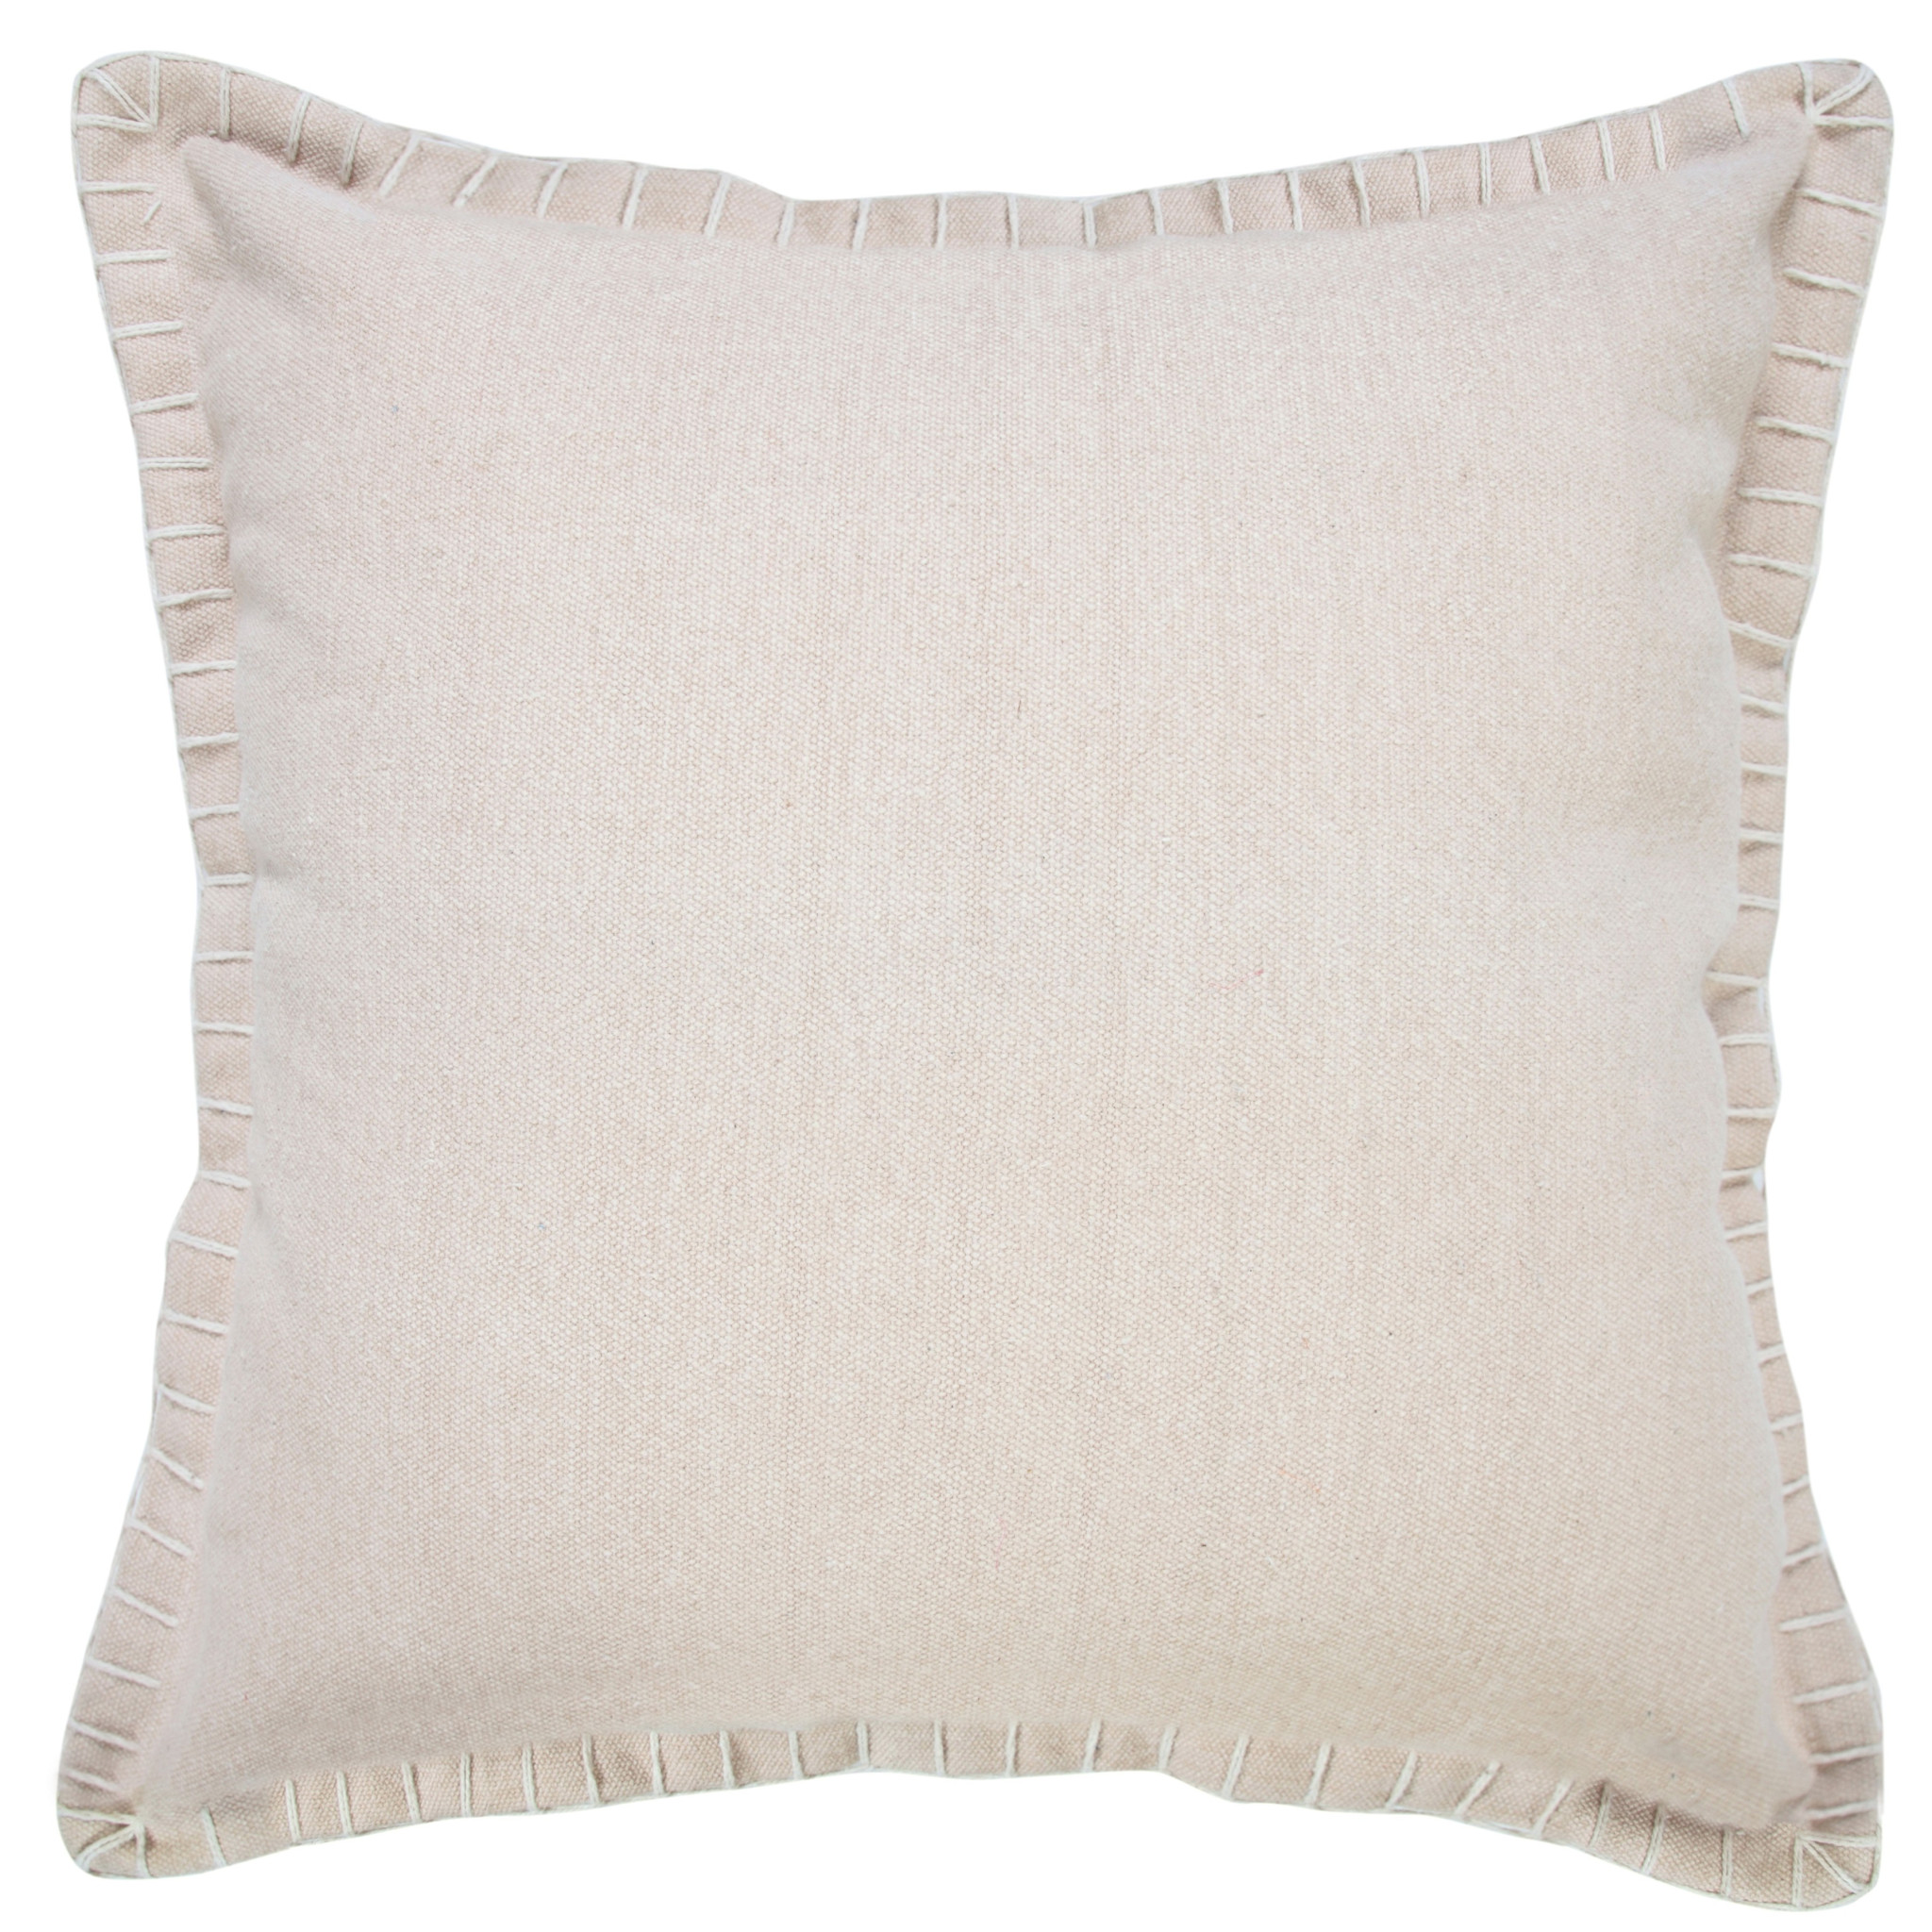 20" X 20" Beige 100% Cotton Zippered Pillow-517203-1